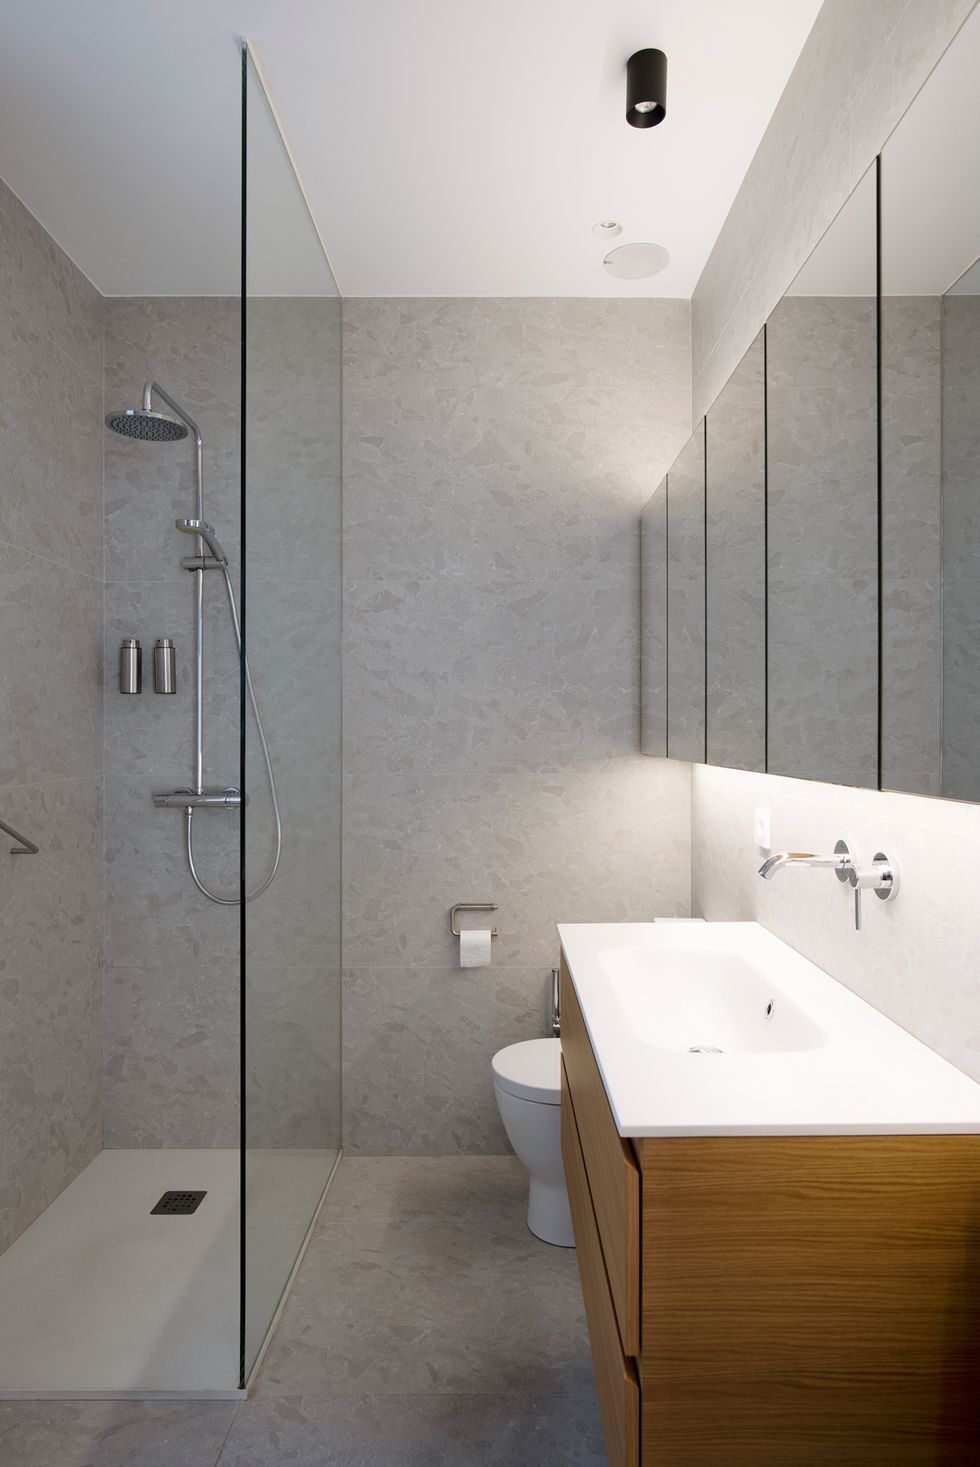 Mamparas modernas para darle una vuelta a tu baño  Piso de la ducha,  Diseño de baños, Remodelar baños